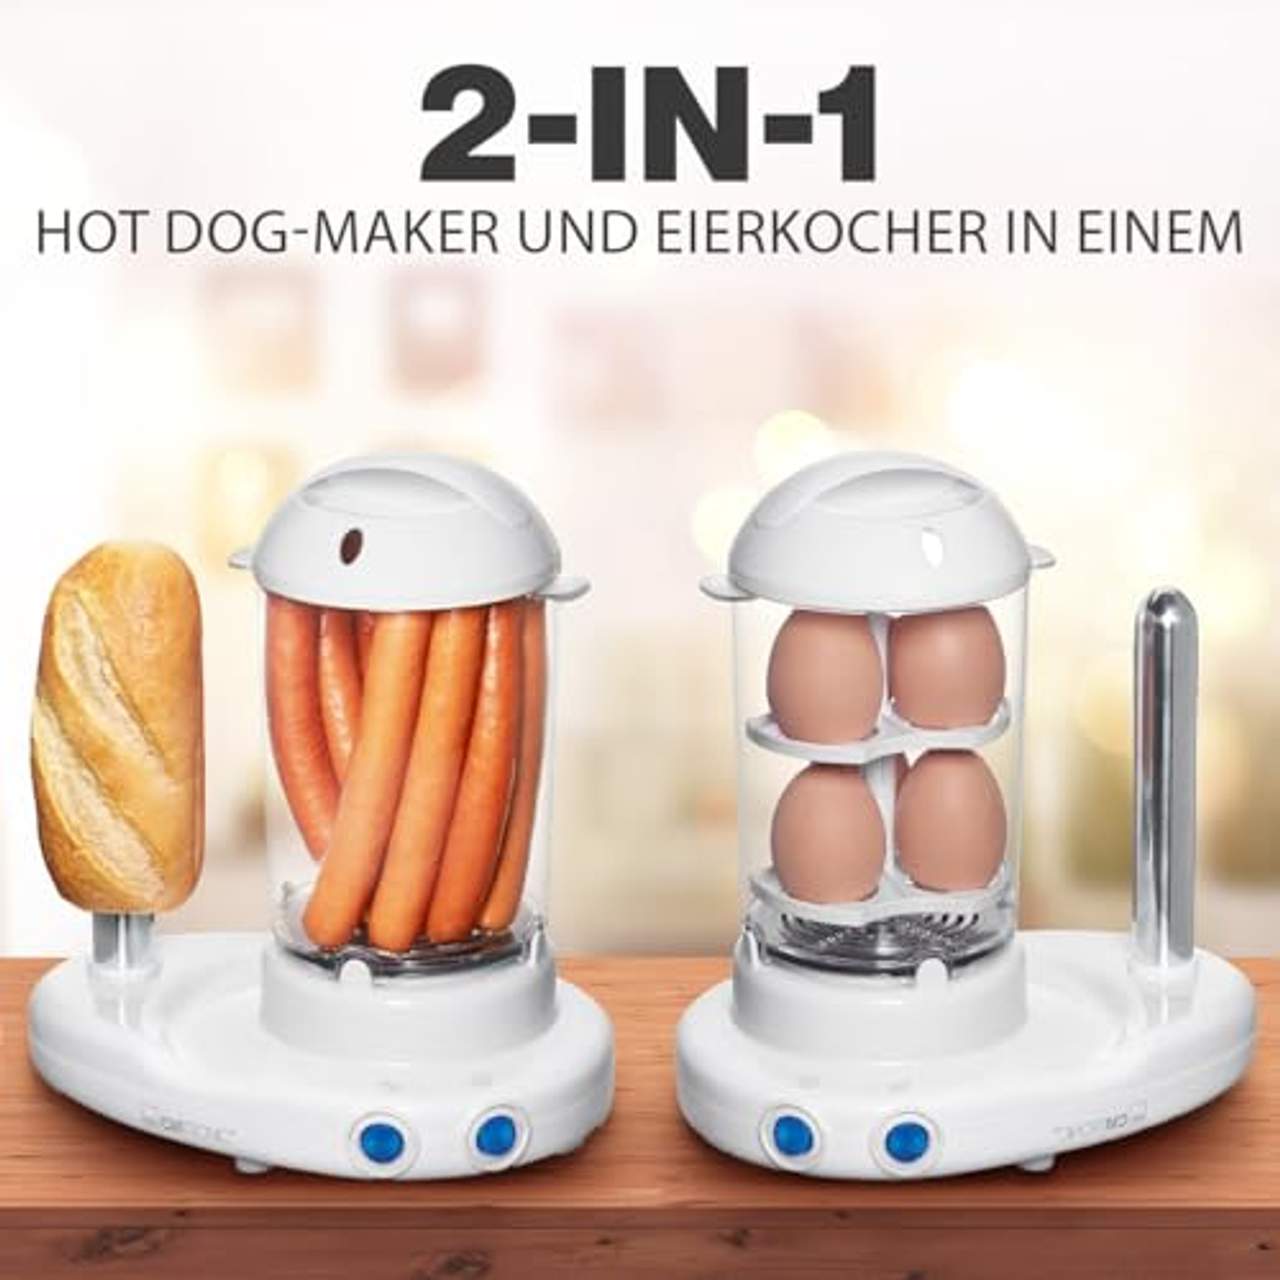 Clatronic HDM 3420 Hot-Dog-Maker inklusiv Eierkocher